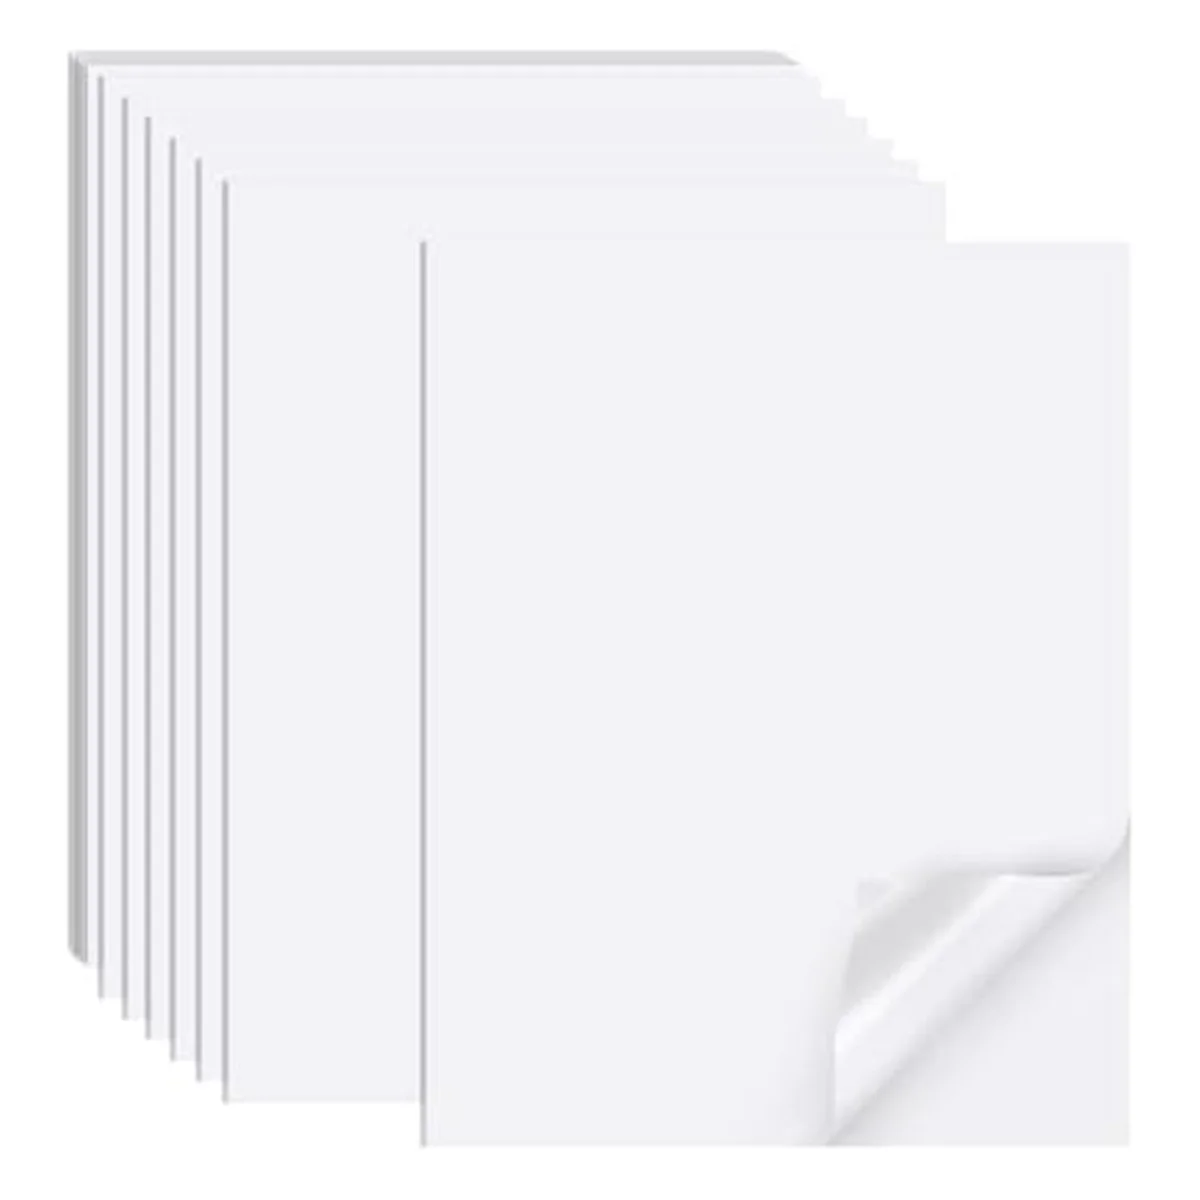 

Inkjet Printable Sticker Paper, 21cm x 30cm Matte Sticker Printer Full Sheet Labels, Suitable for Inkjet Printers